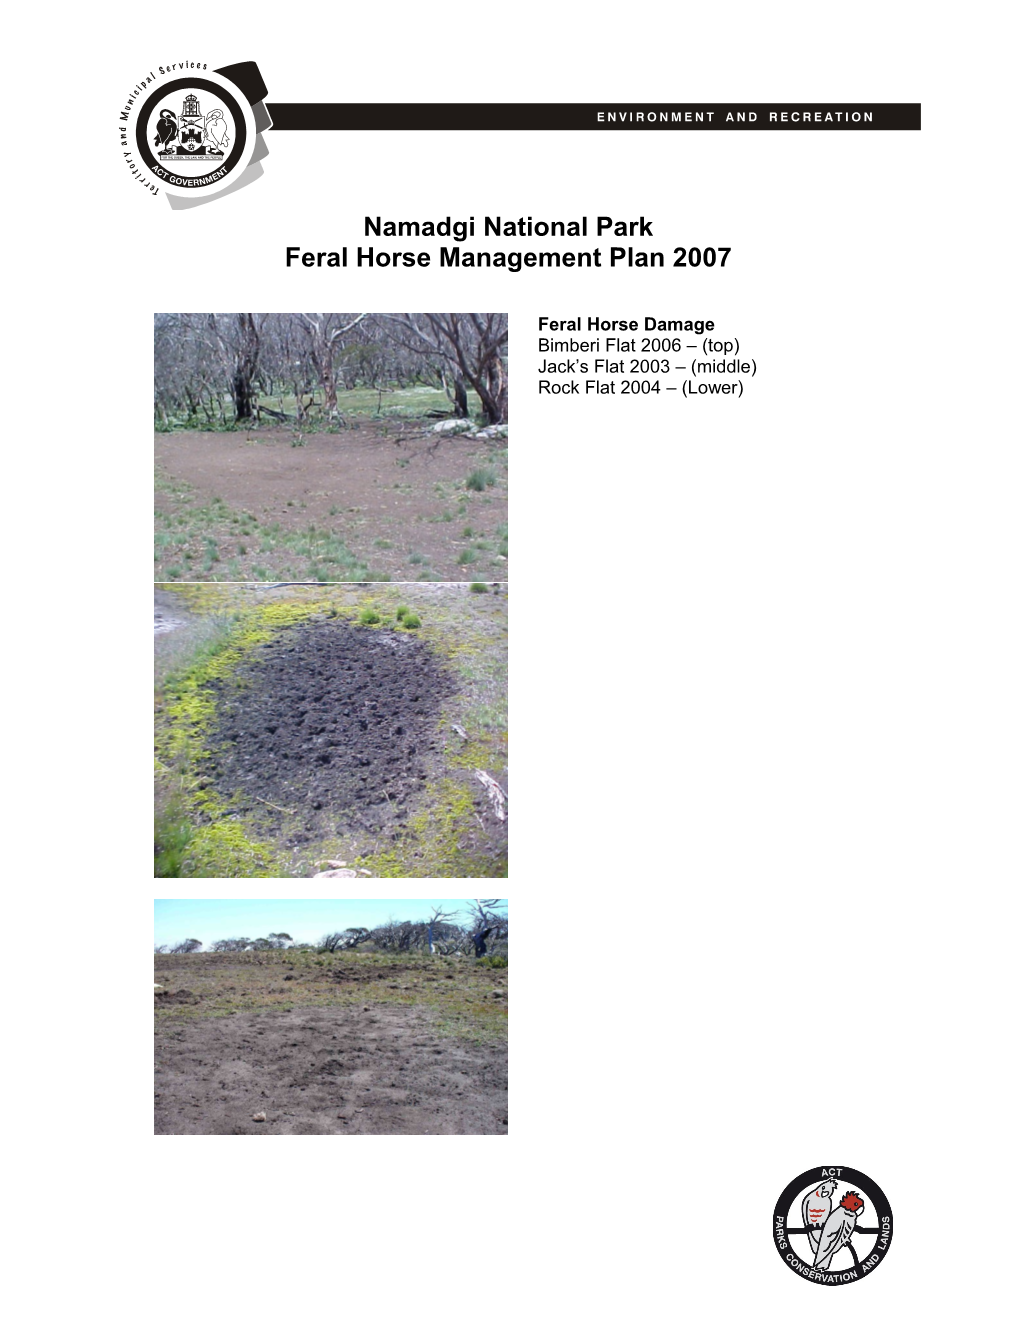 Namadgi National Park Horse Management Strategy